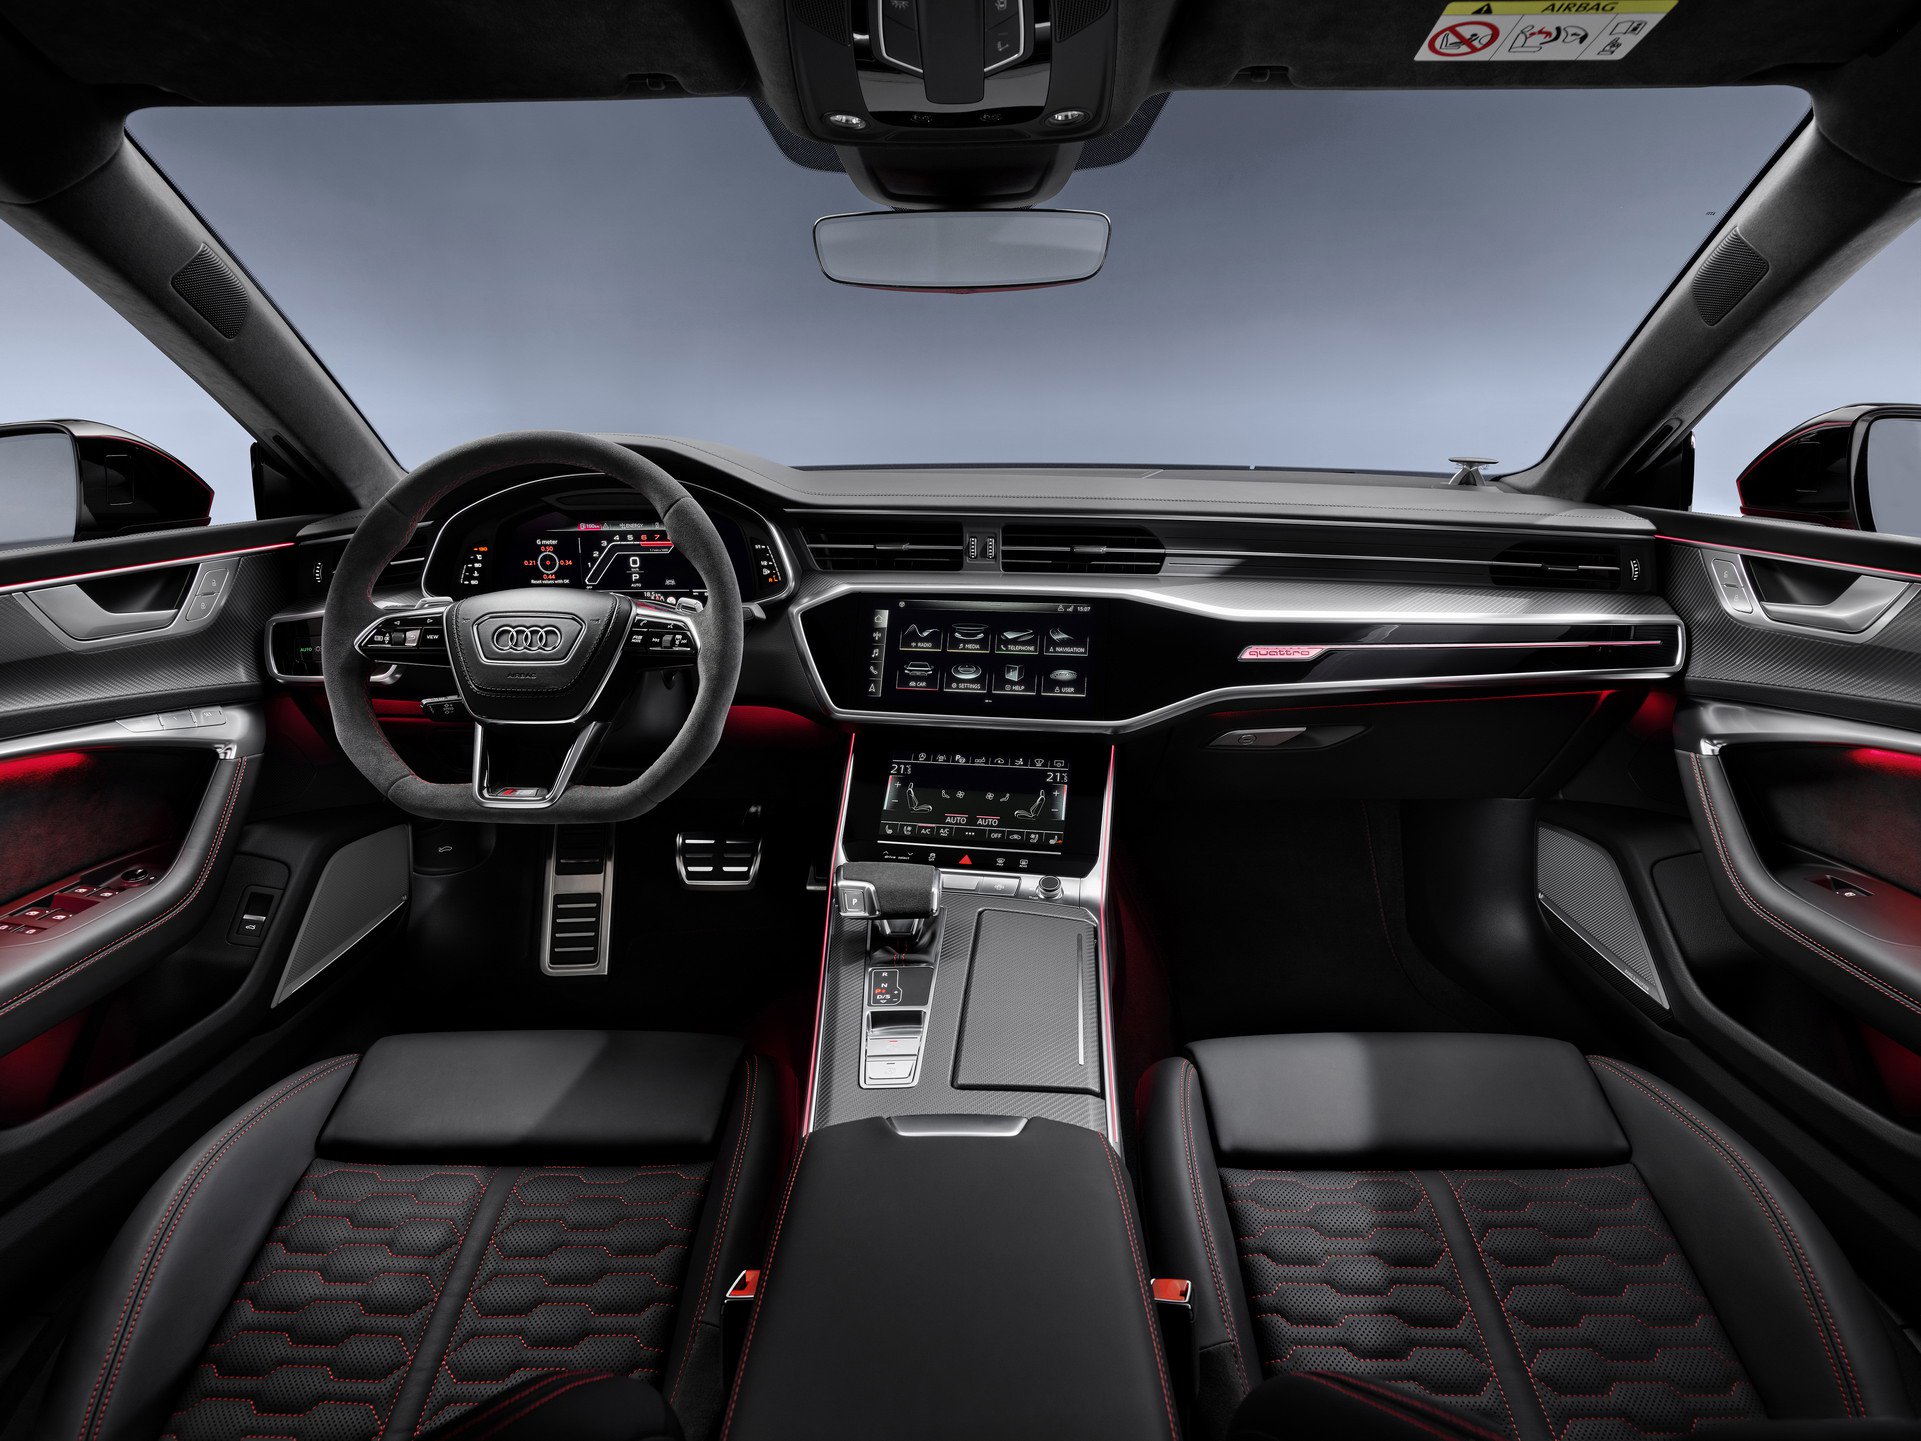 2020 Audi RS7 Sportback 600 beygirlik motoruyla tanıtıldı